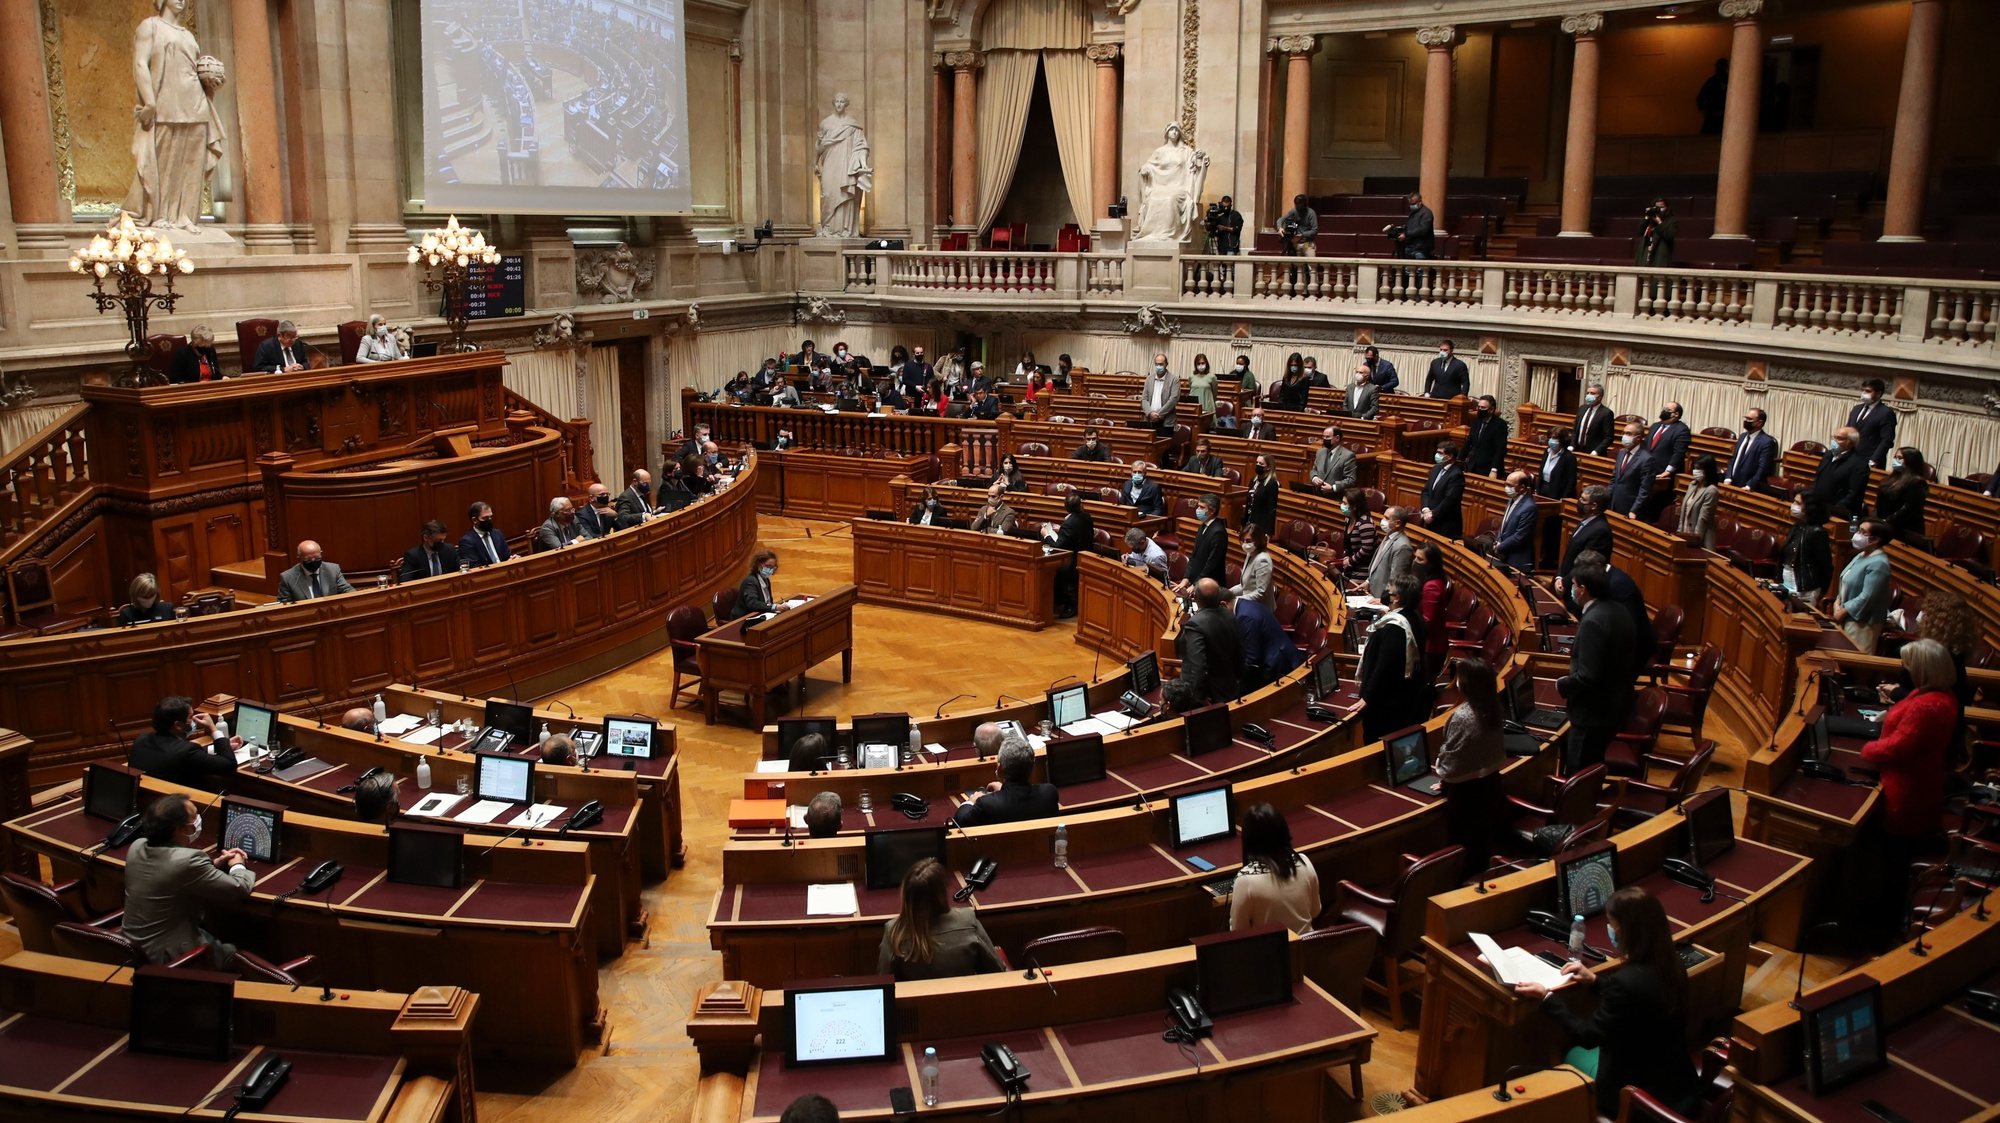 Deputados do Partido Socialista (PS) votam a favor do Orçamento do Estado 2021 (OE2021), na Assembleia da República, em Lisboa, 26 de novembro de 2020. O parlamento aprovou hoje a proposta bloquista de alteração ao Orçamento do Estado que anula a transferência de 476 milhões de euros do Fundo da Resolução destinada ao Novo Banco, com votos favoráveis do PSD, BE, PCP e PAN. MANUEL DE ALMEIDA/LUSA